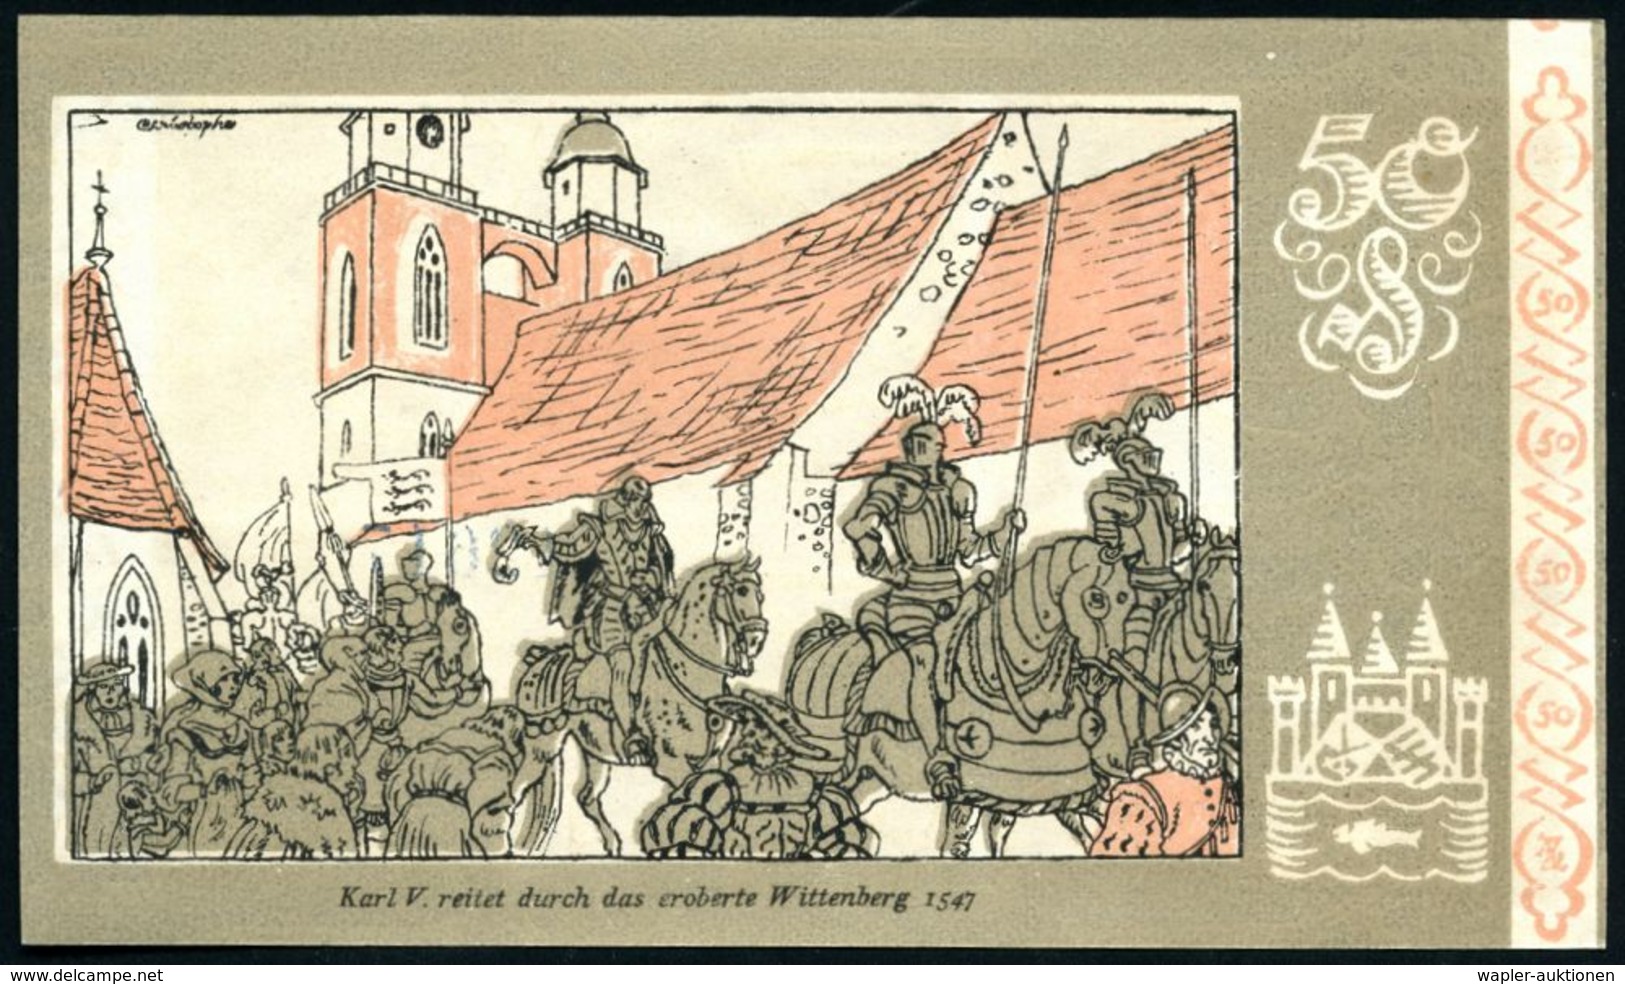 Wittenberg 1922 8 verschied. Infla-Notgeldscheine 25 Pf. bis 2.- Mk "Deutsche Geschichte" = kompl.Serie ,dabei Motive Pe